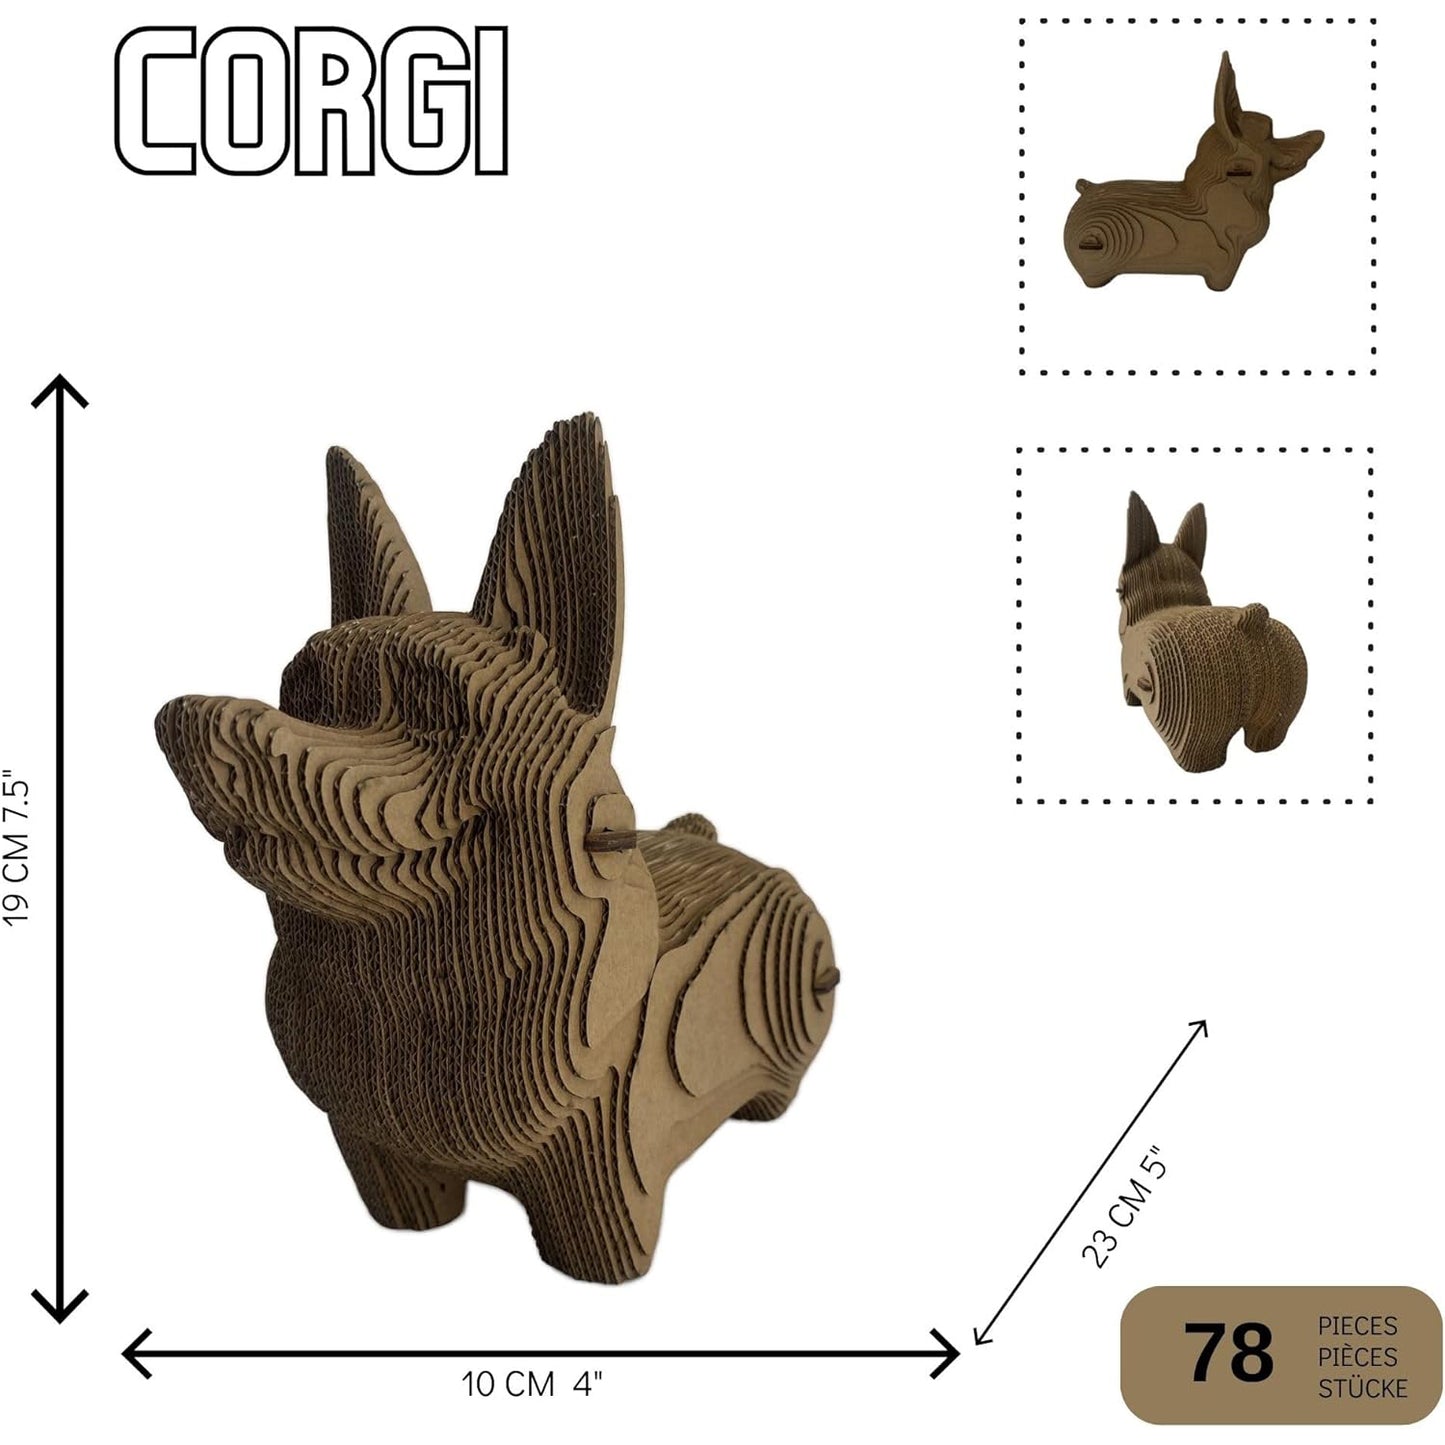 3D head sculpture made of corrugated cardboard - Corgi